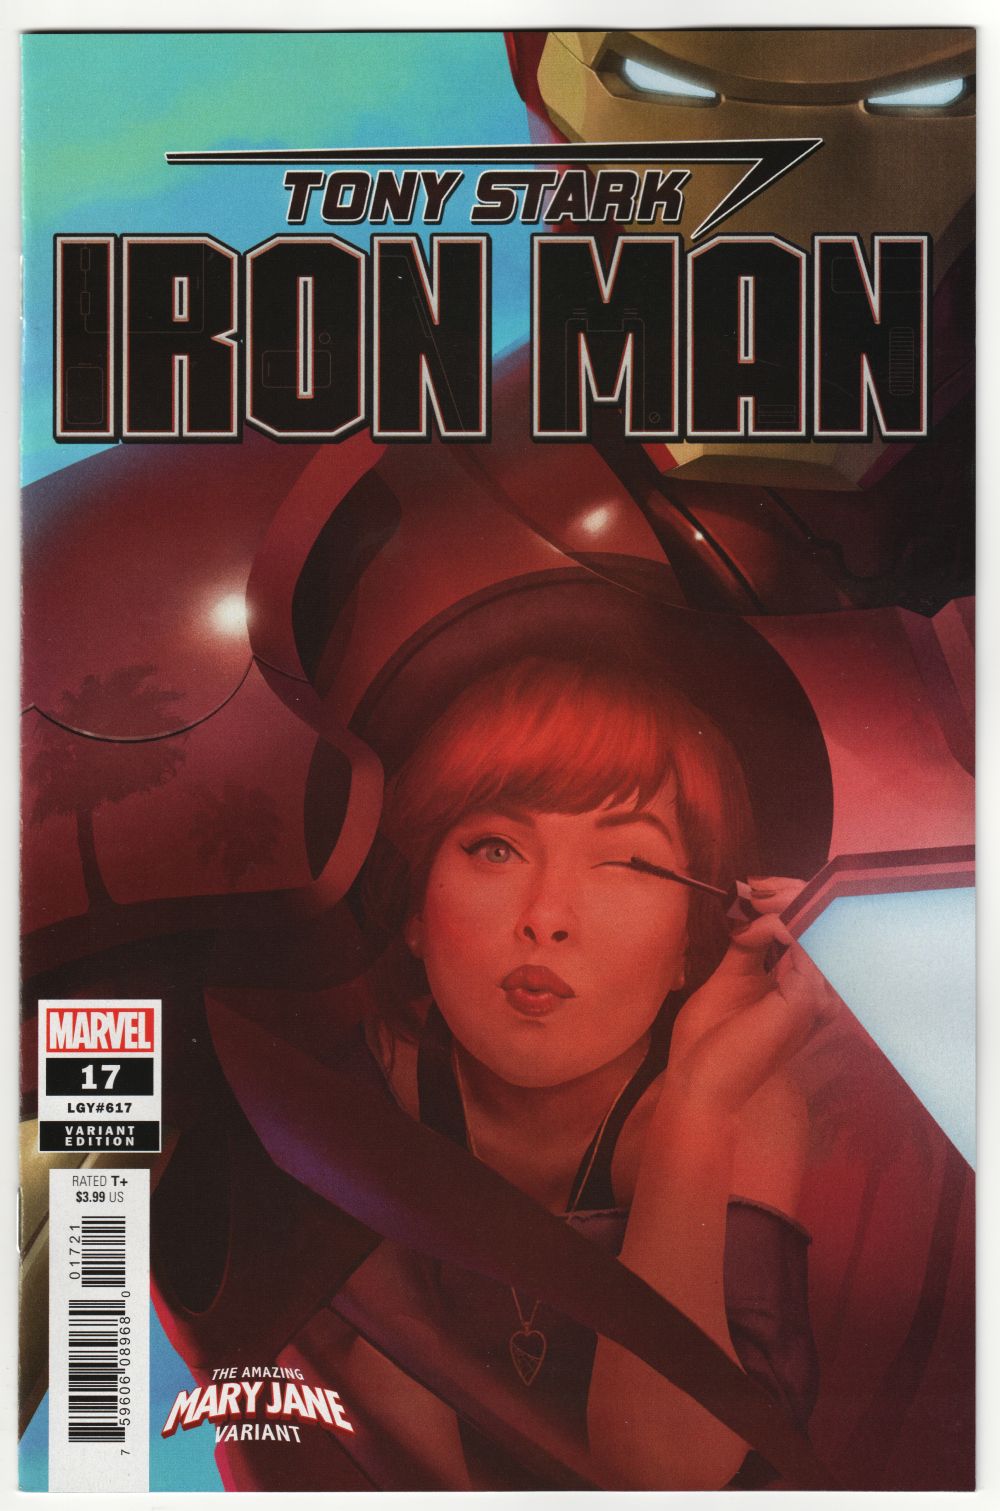 Tony Stark Iron Man #17  LGY #617 Mary Jane Variant  Marvel Comics CB20930